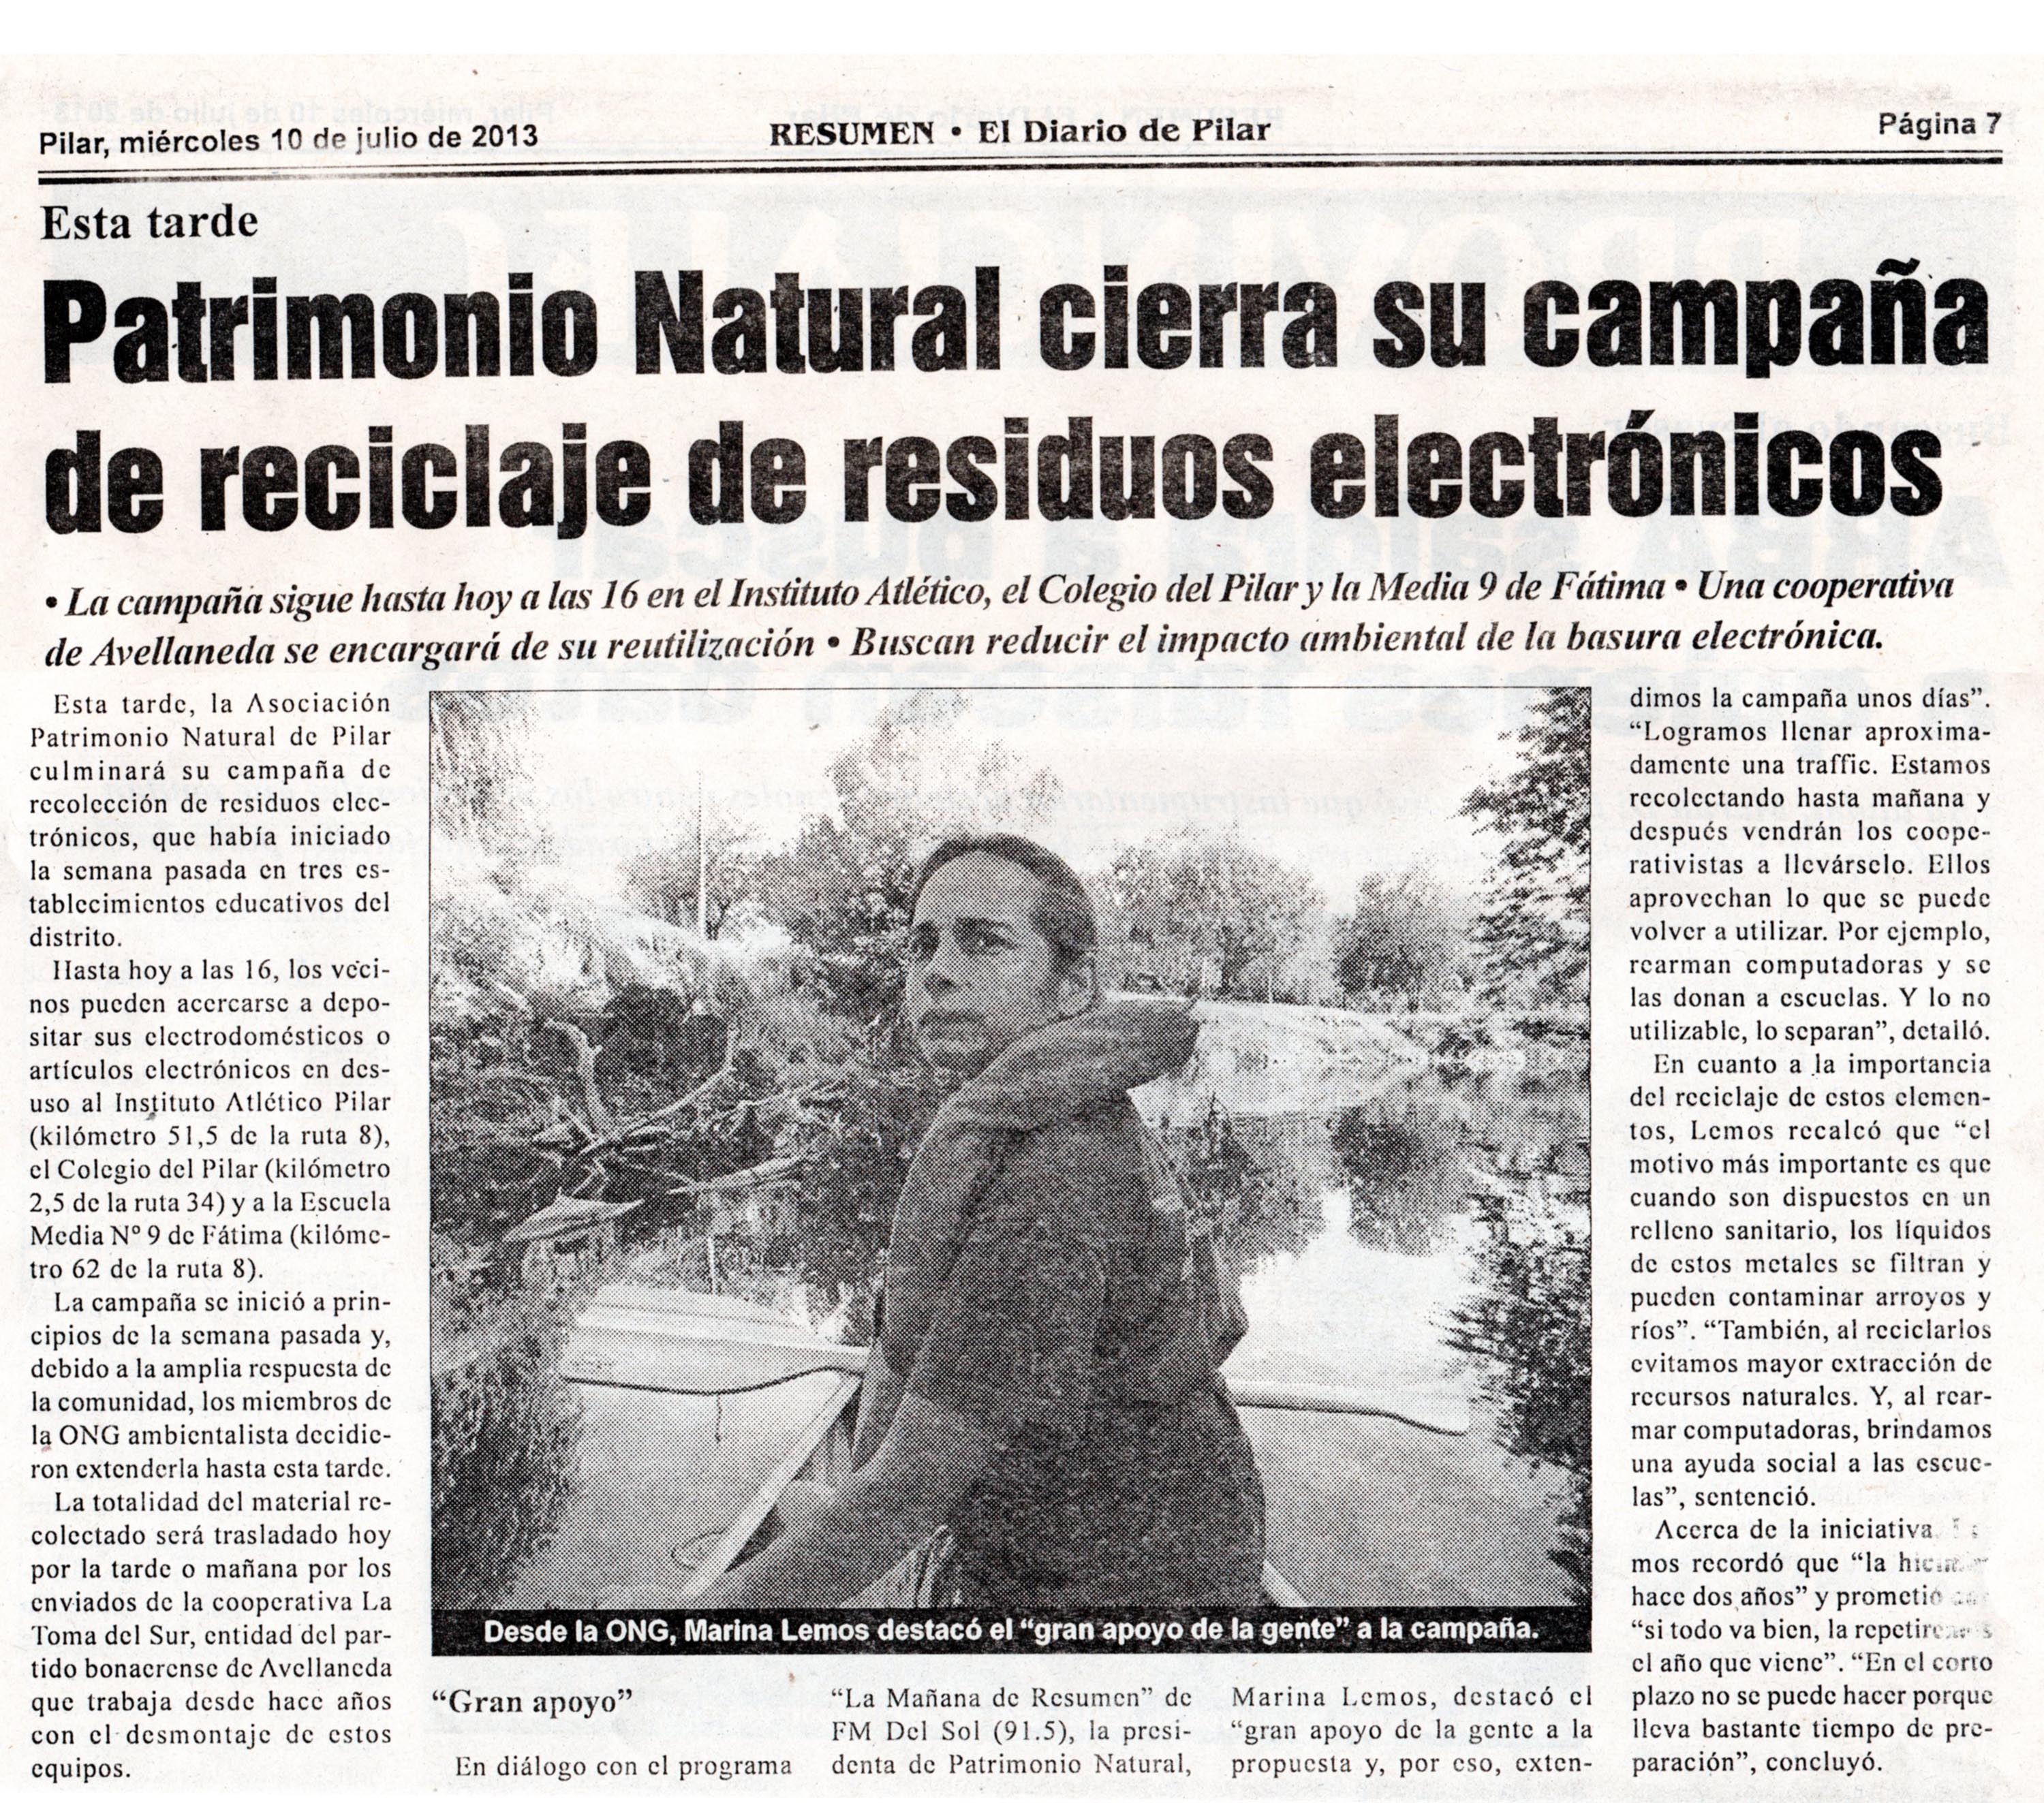 Diario Resumen, miércoles 10 de julio de 2013